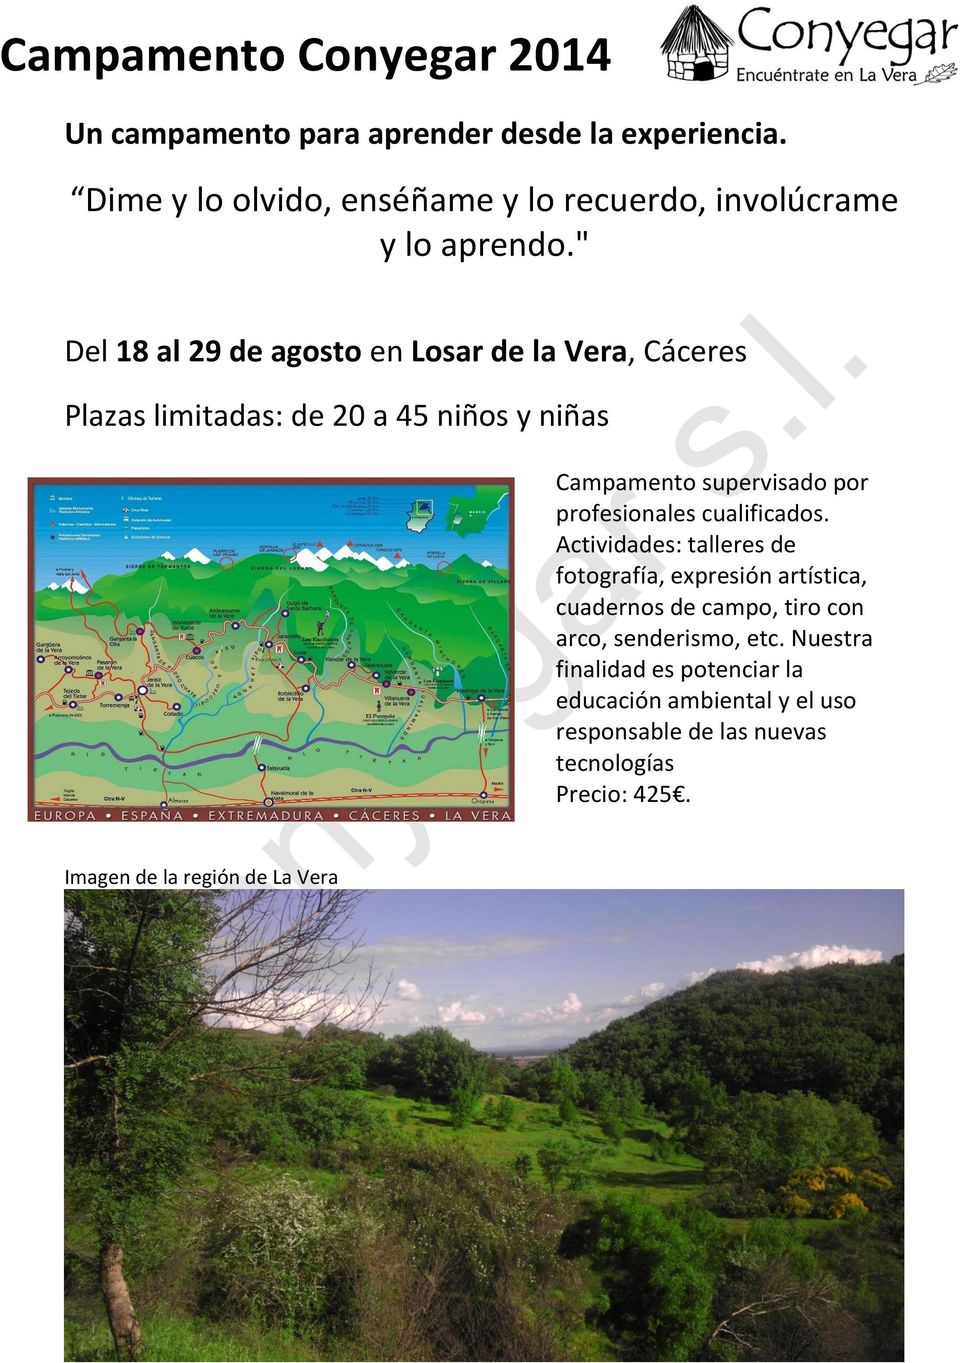 " Del 18 al 29 de agosto en Losar de la Vera, Cáceres Plazas limitadas: de 20 a 45 niños y niñas Campamento supervisado por